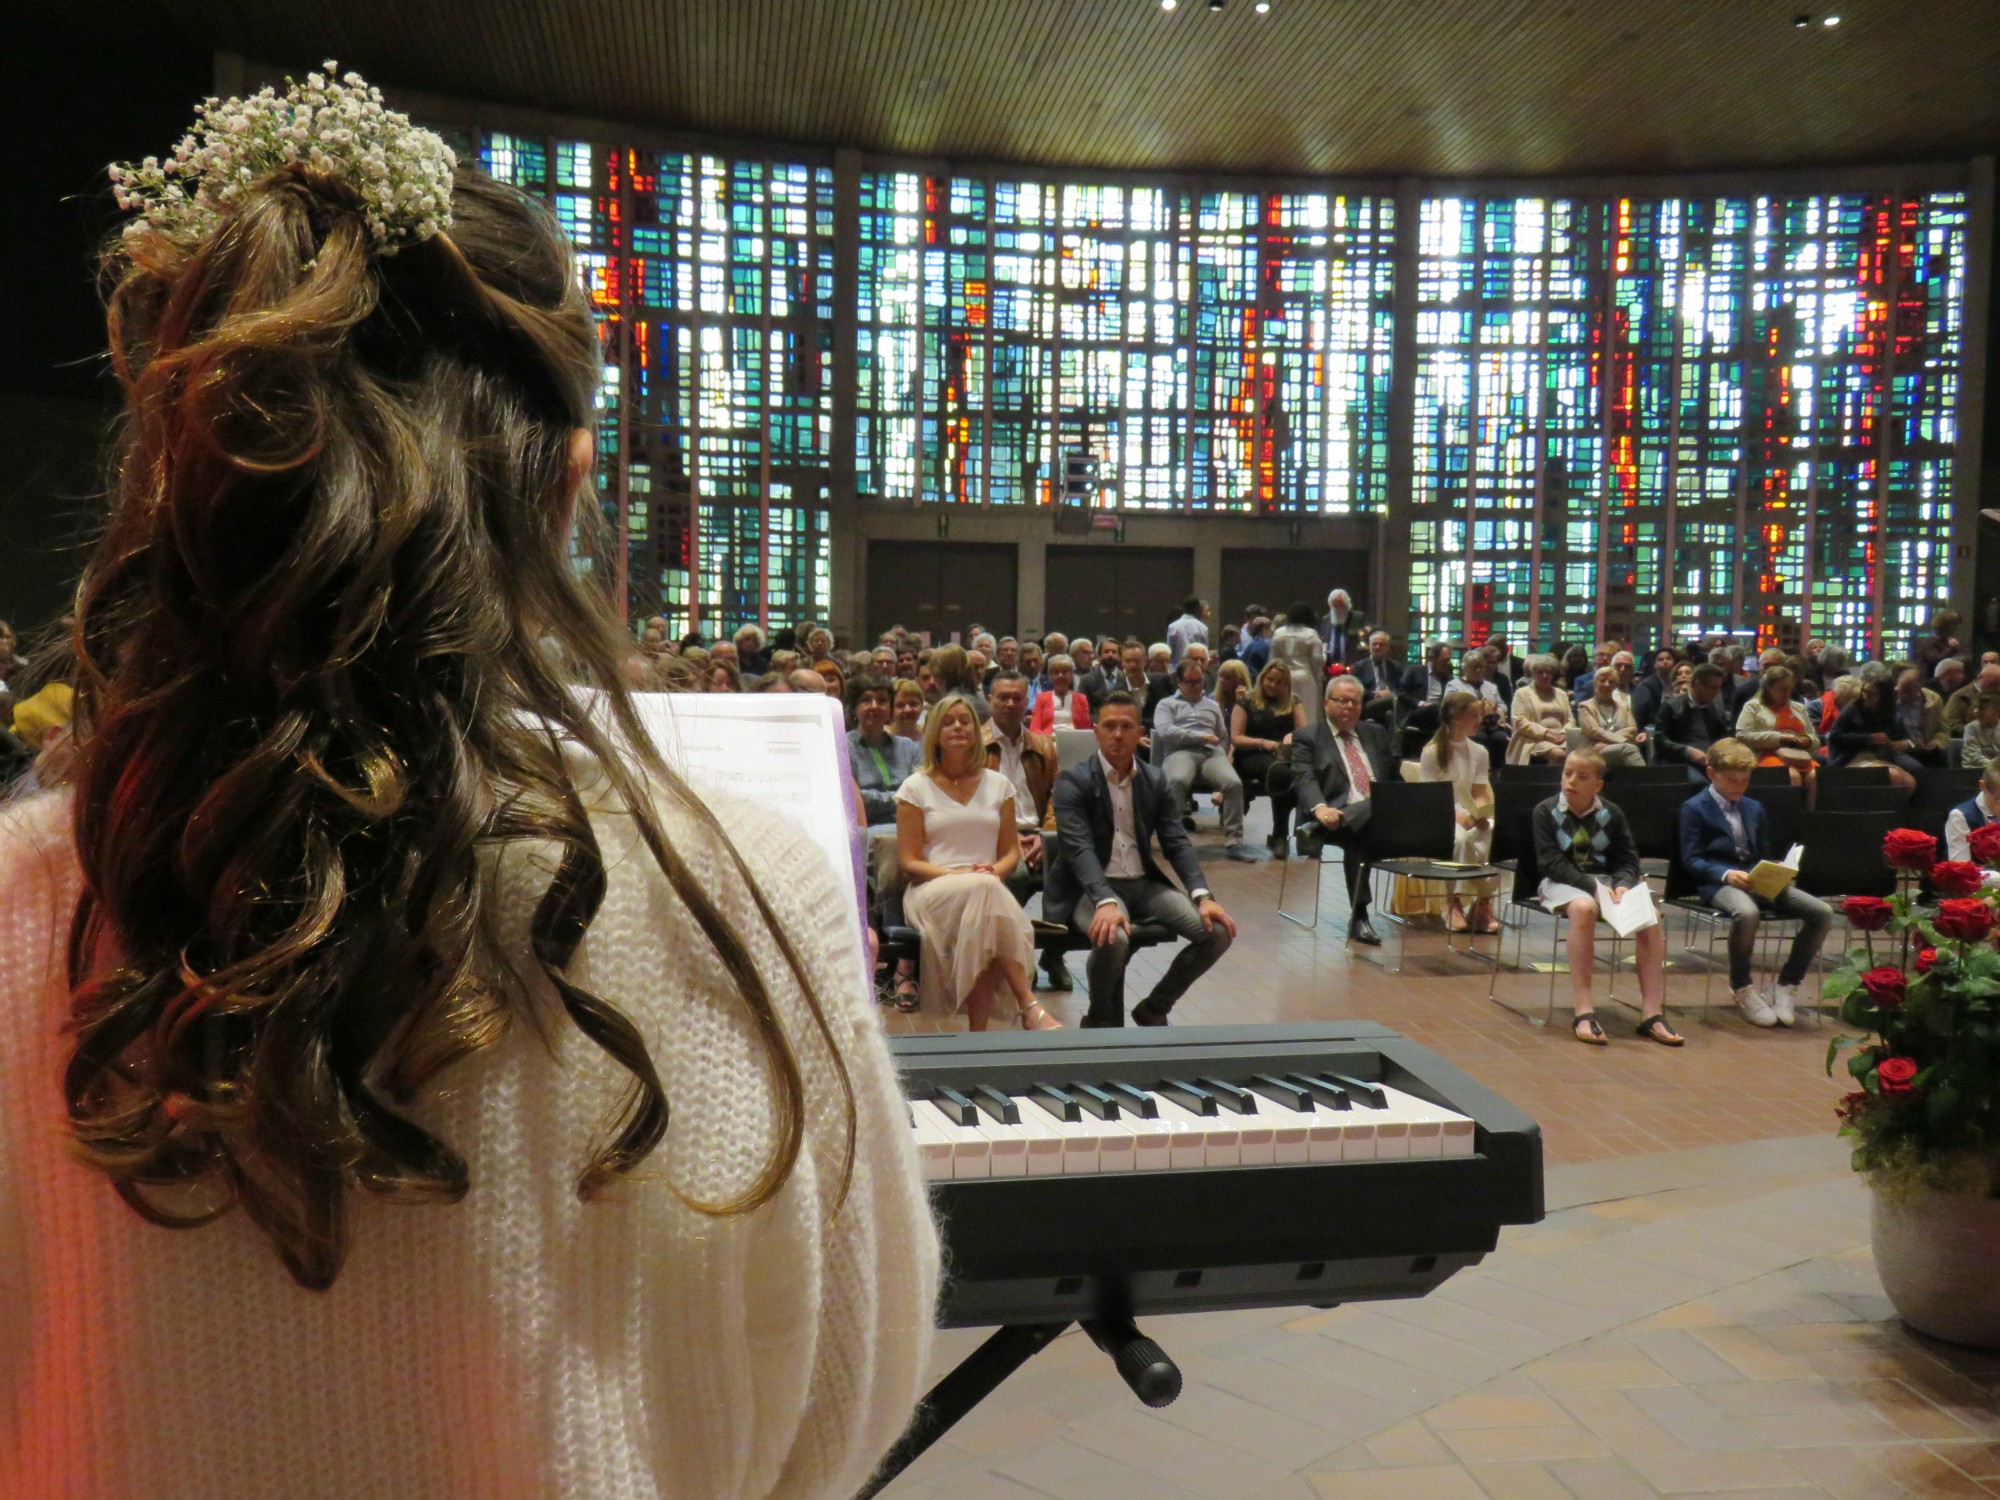 Marie aan de piano tijdens de offerande